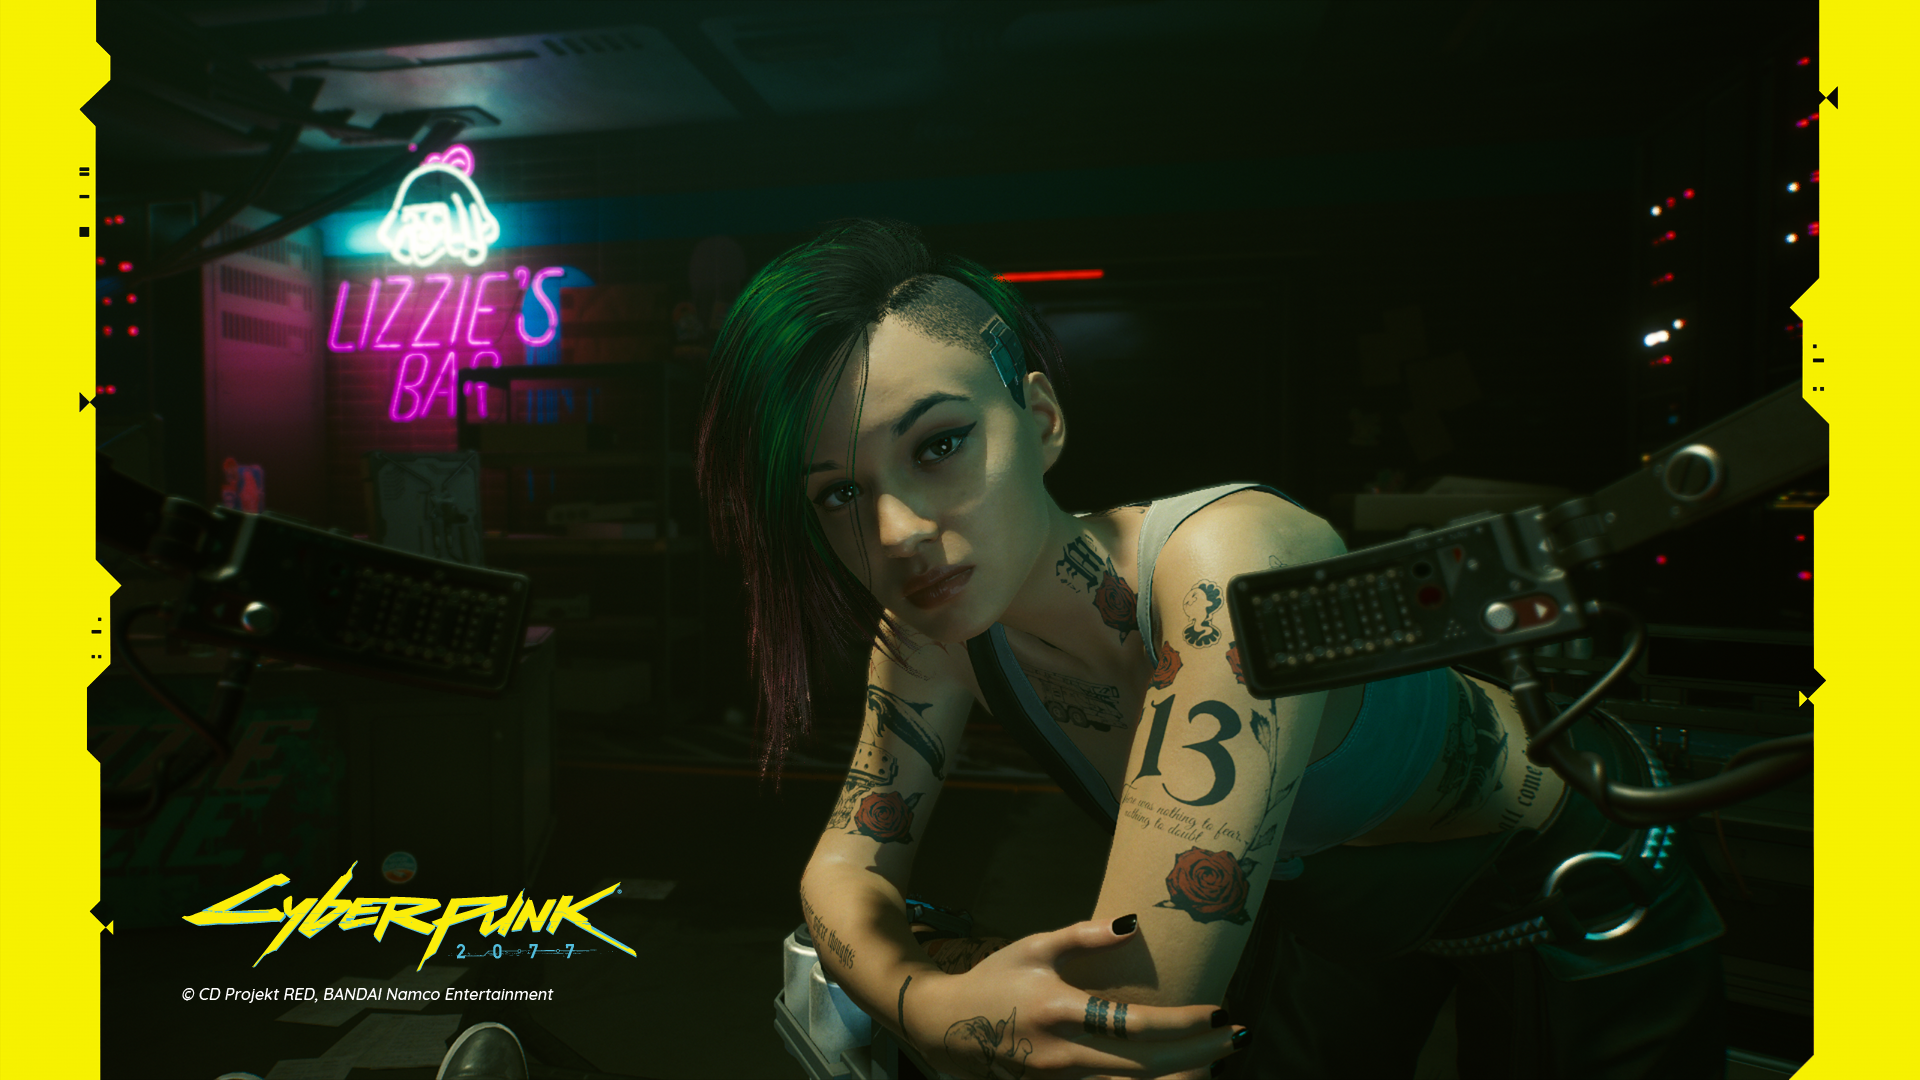 Cyberpunk 2077 Fotomodus (Xbox Series X): Judy weist uns in den Braindance Editor ein